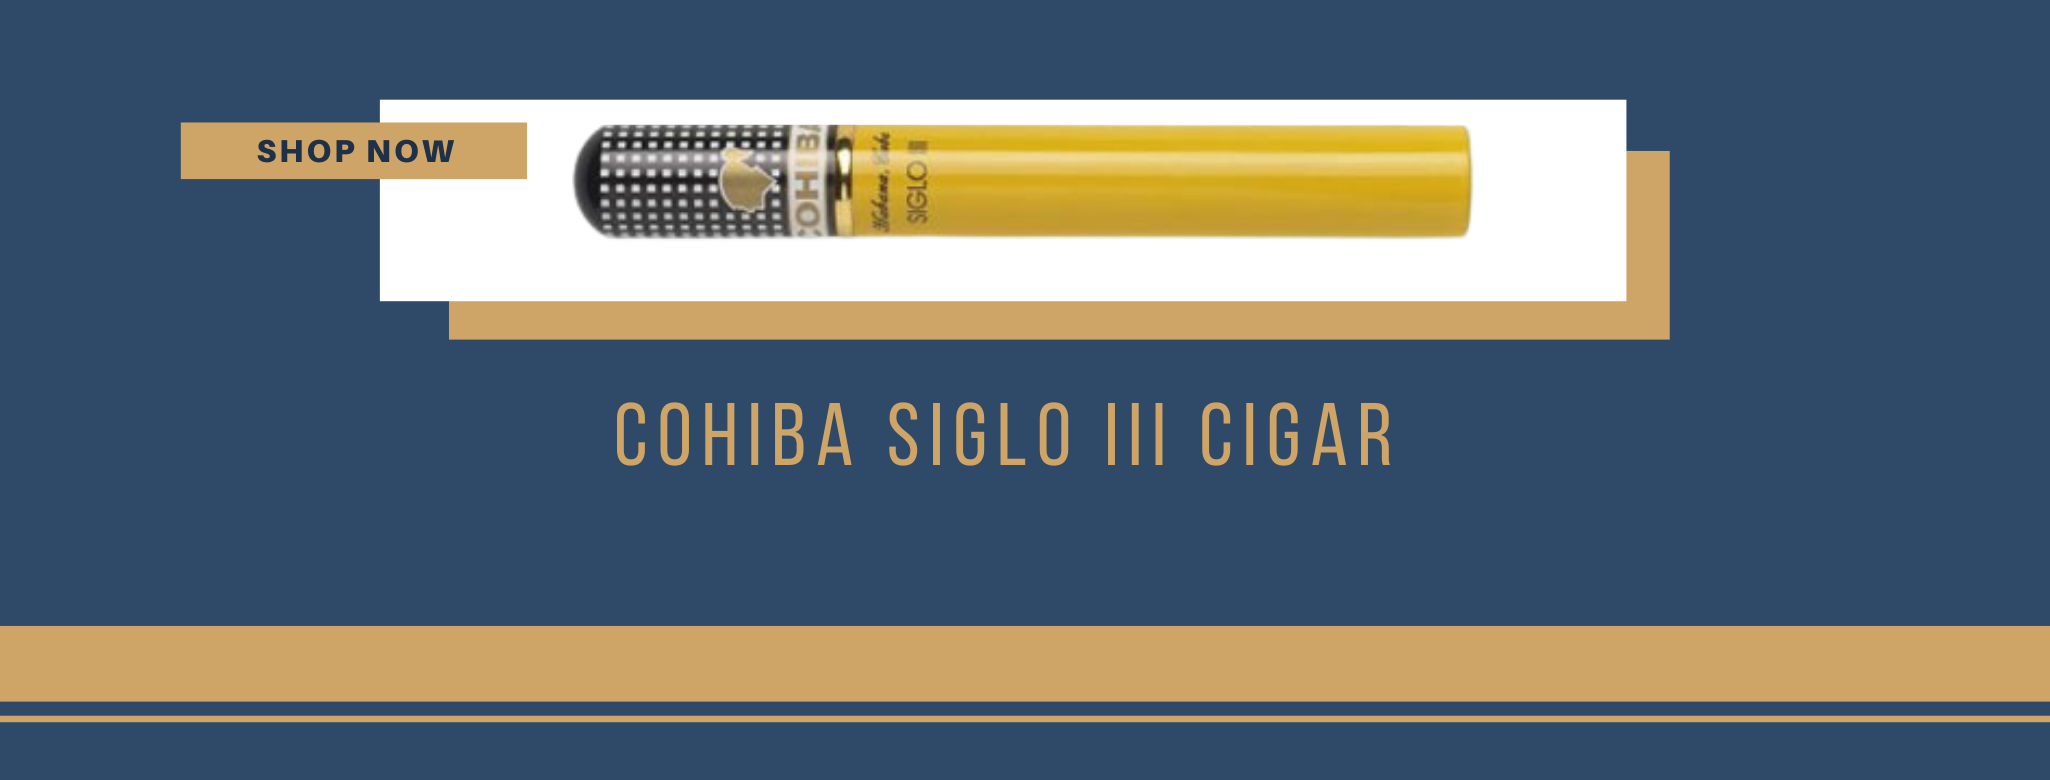 Buy Cohiba Siglo III cigars online